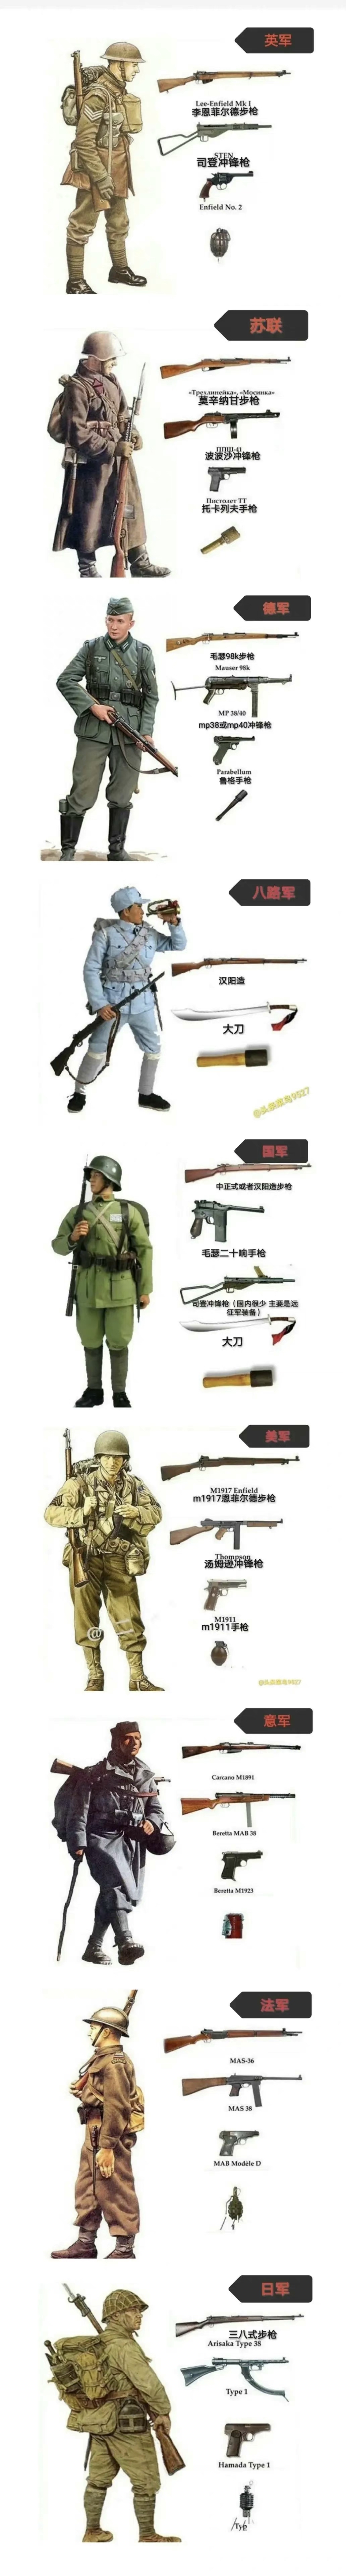 第二次世界大战期间各国单兵装备展示